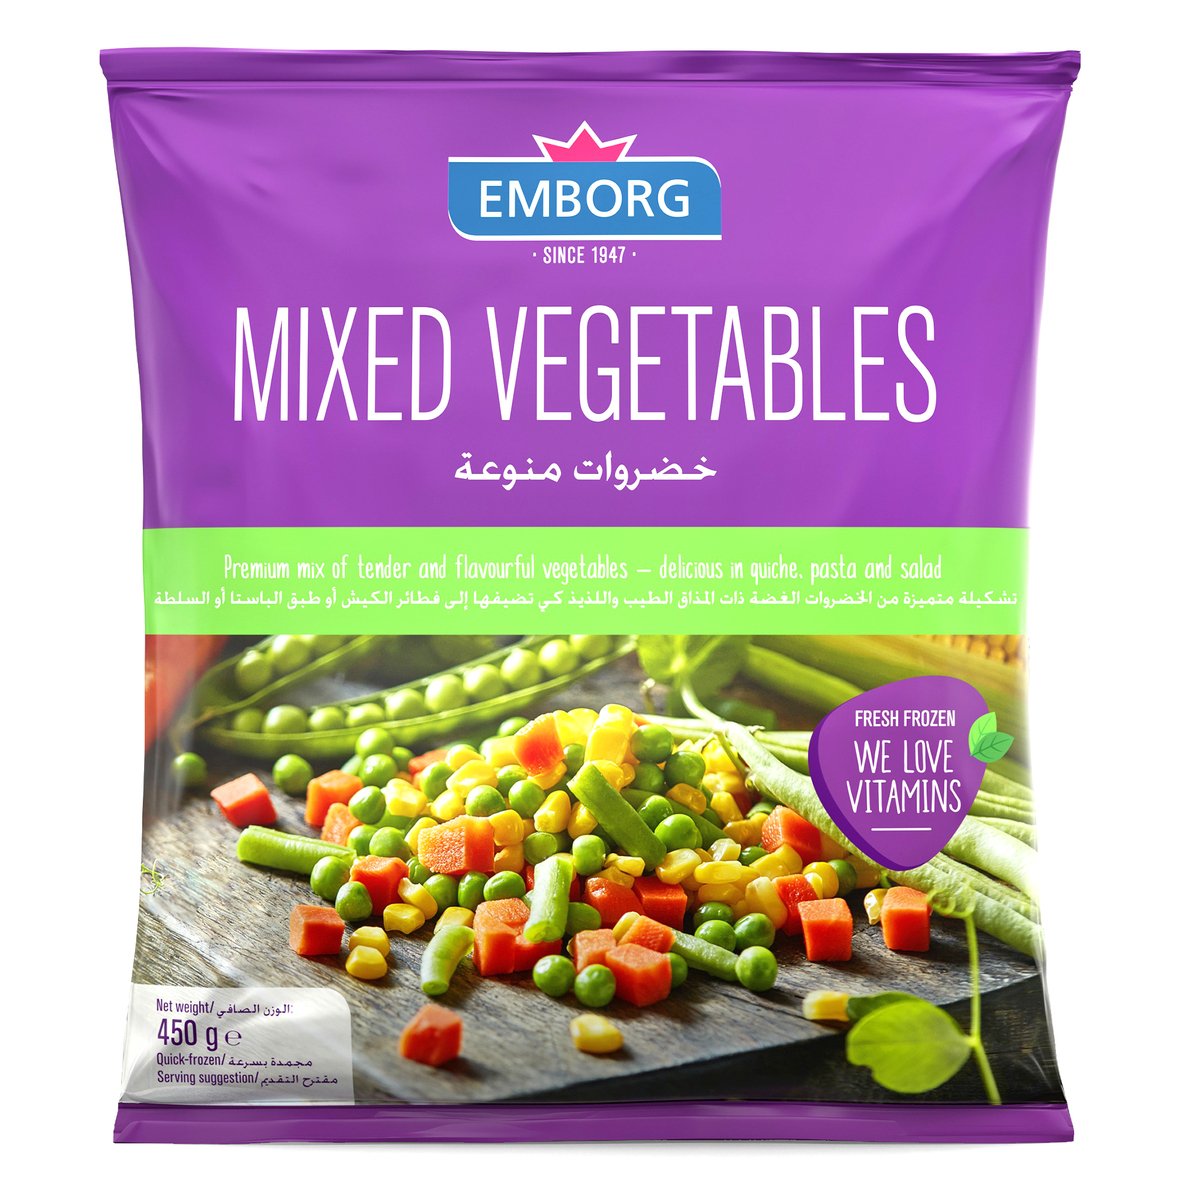 Emborg Mixed Vegetables Value Pack 3 x 450 g